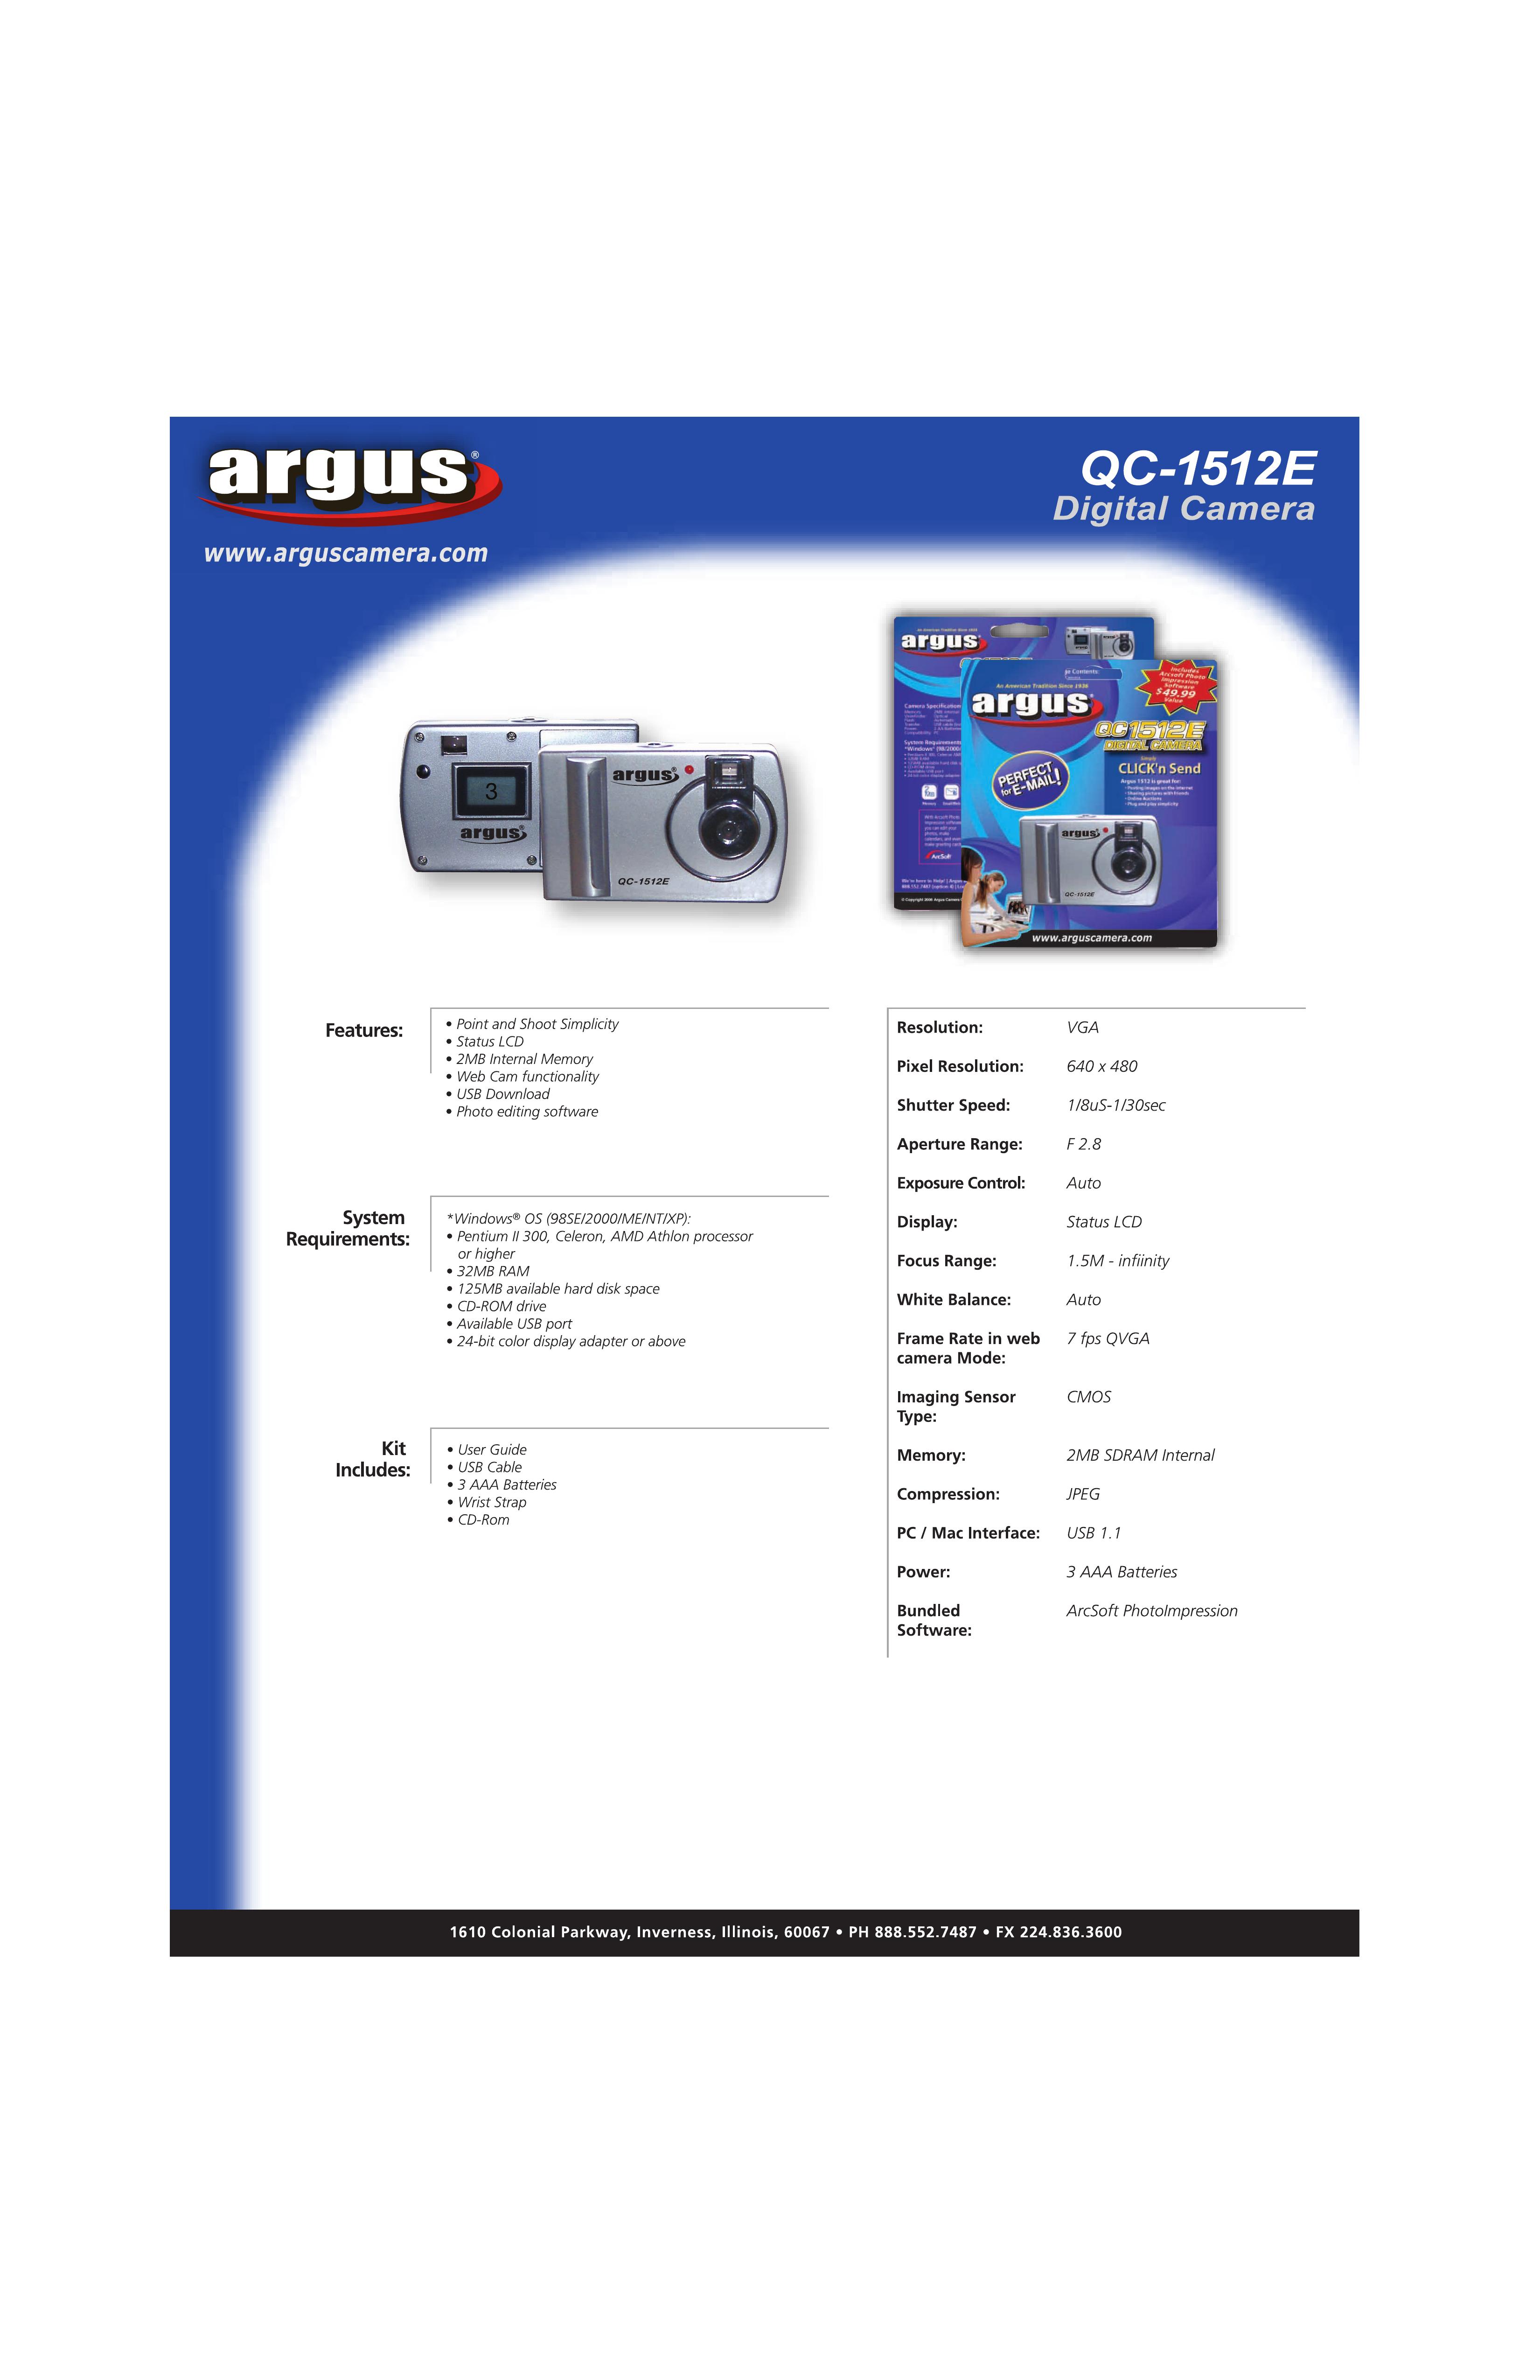 Argus Camera QC-1512E Digital Camera User Manual